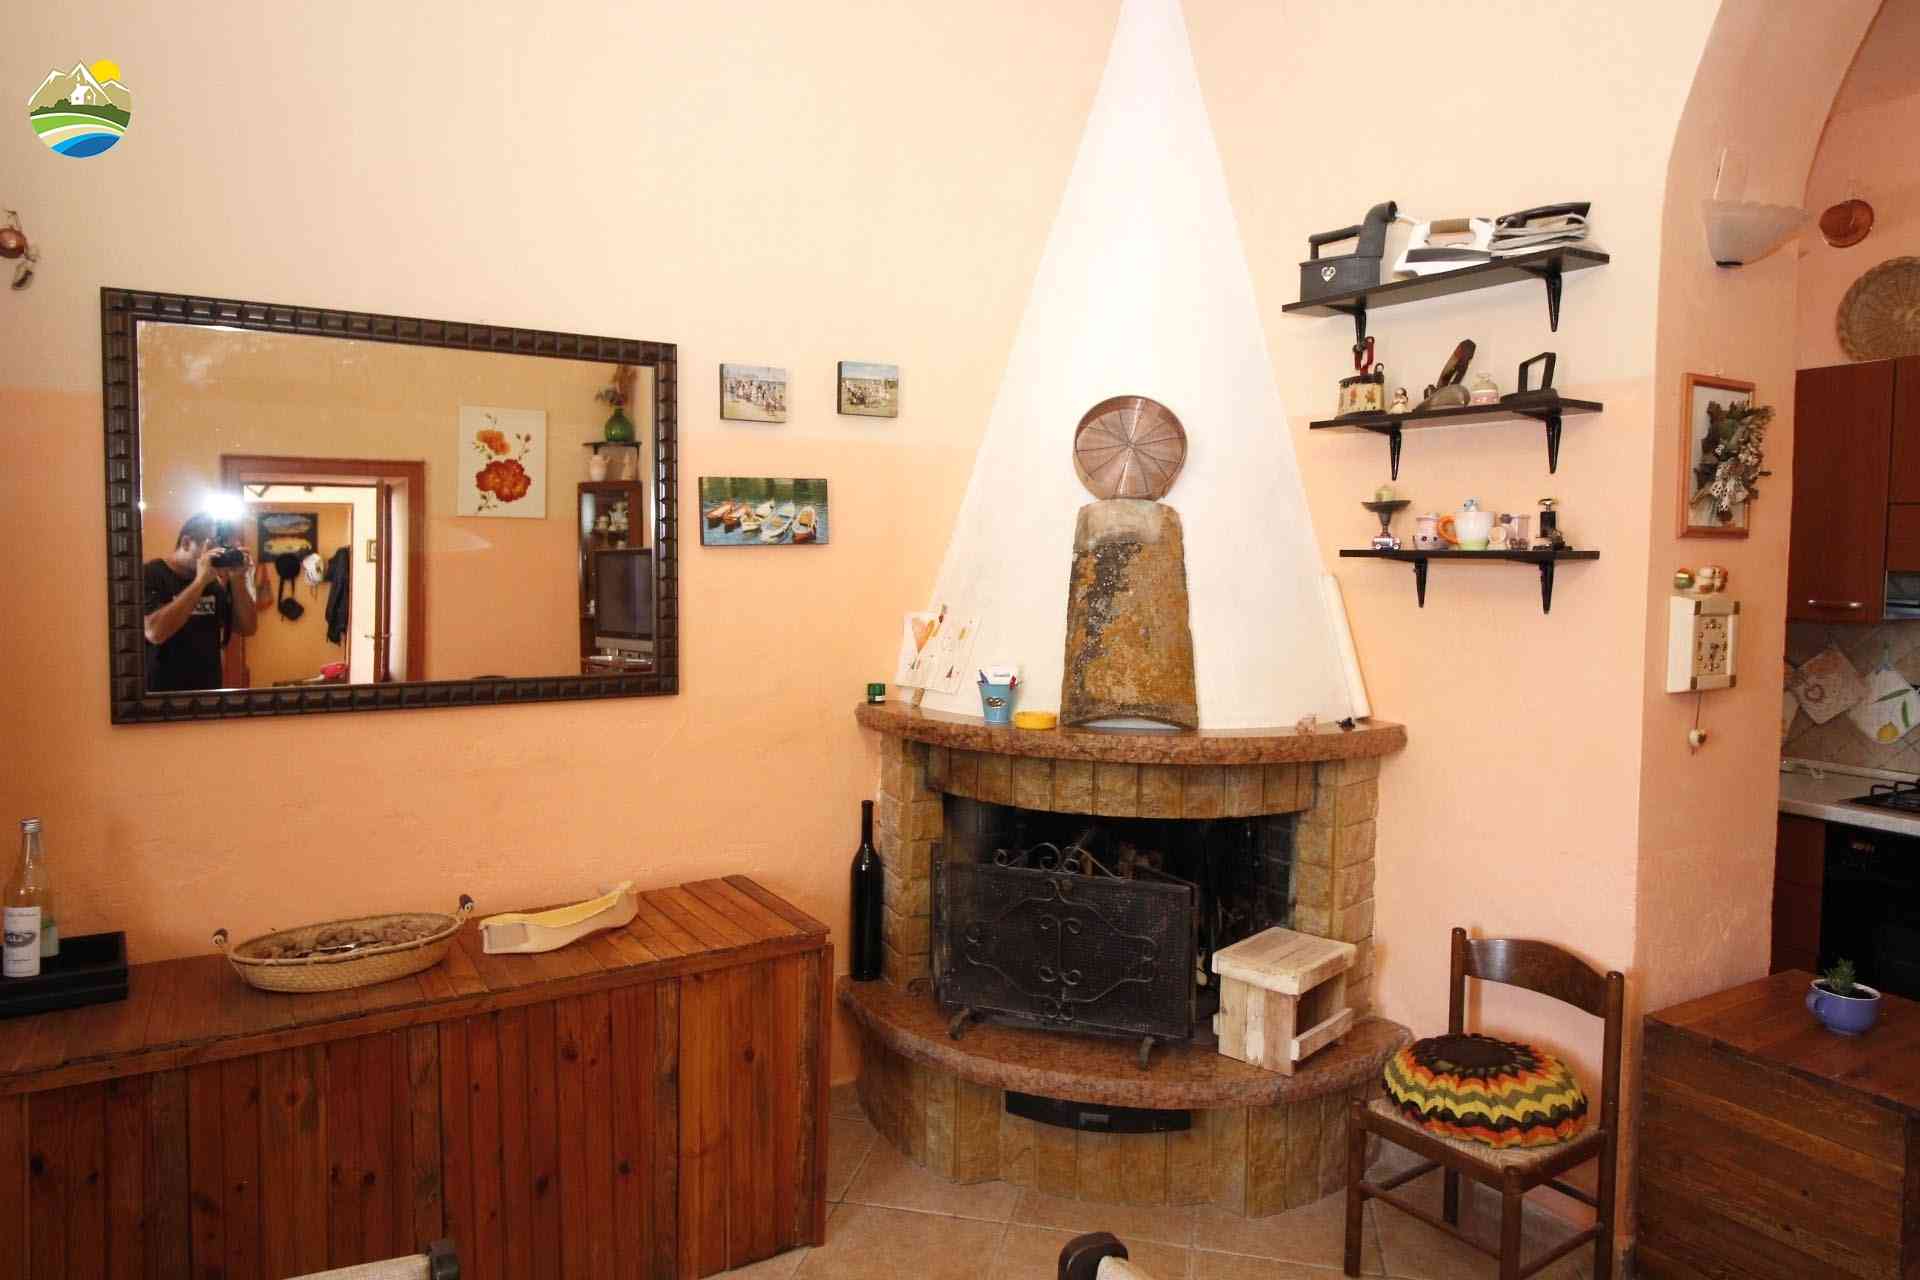 Townhouse Townhouse for sale Loreto Aprutino (PE), Casa del Maestro - Loreto Aprutino - EUR 166.238 570 small